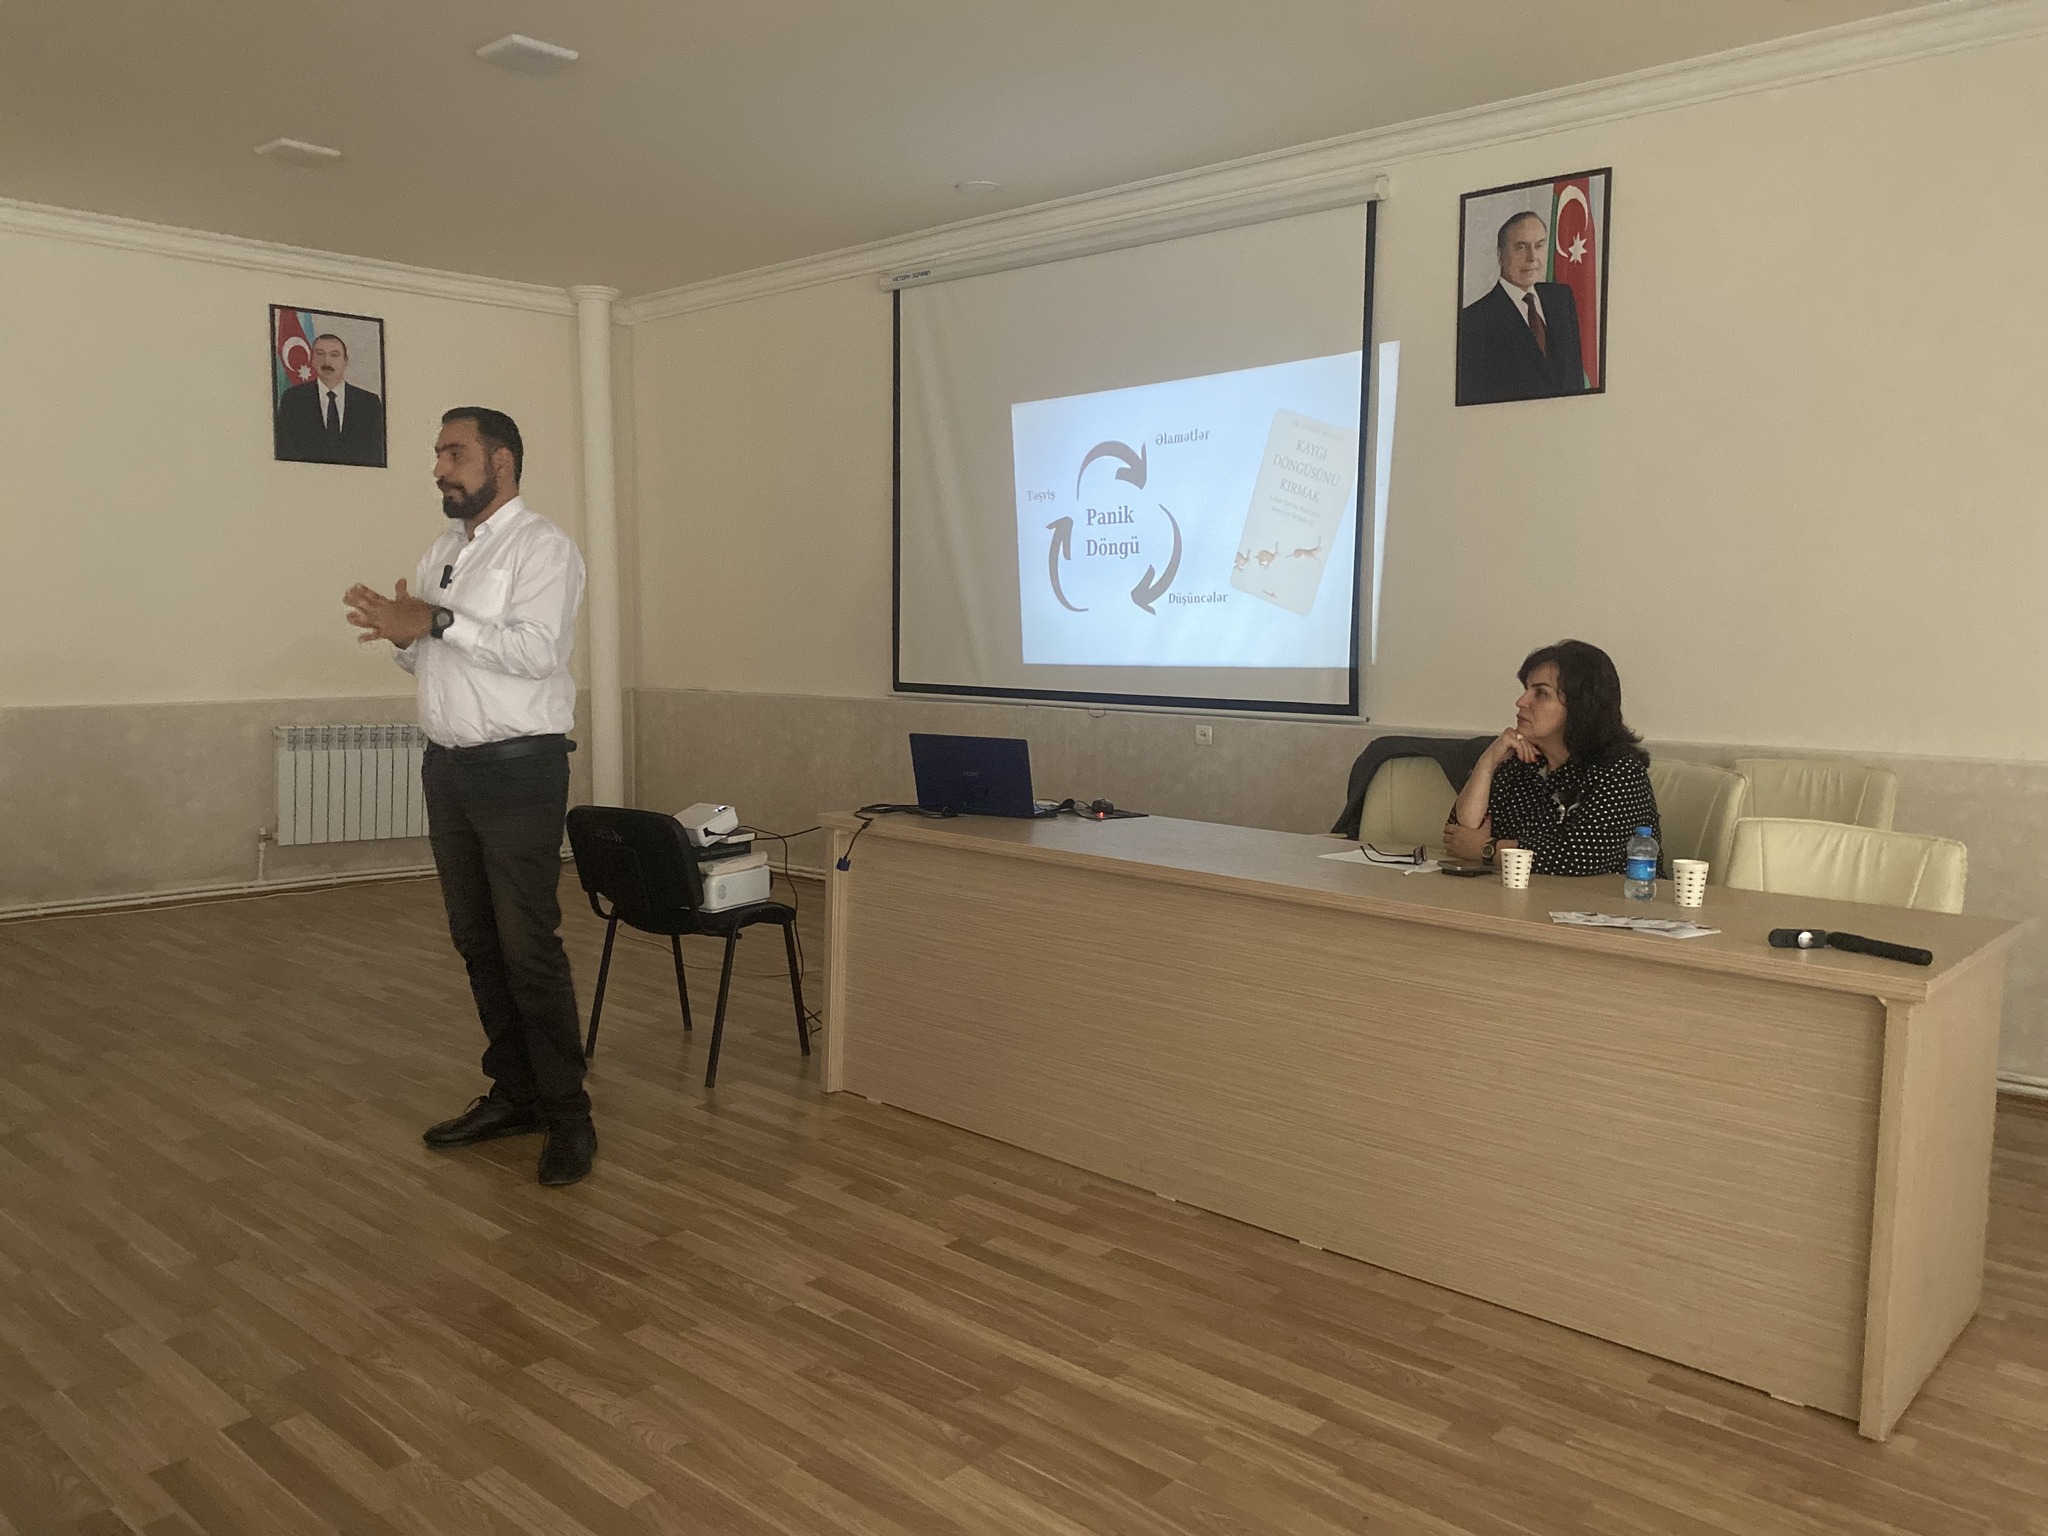 Gəncədə “Təşviş pozuntuları ilə psixoloji işin aparılması proqramı” mövzusunda seminar keçirilib